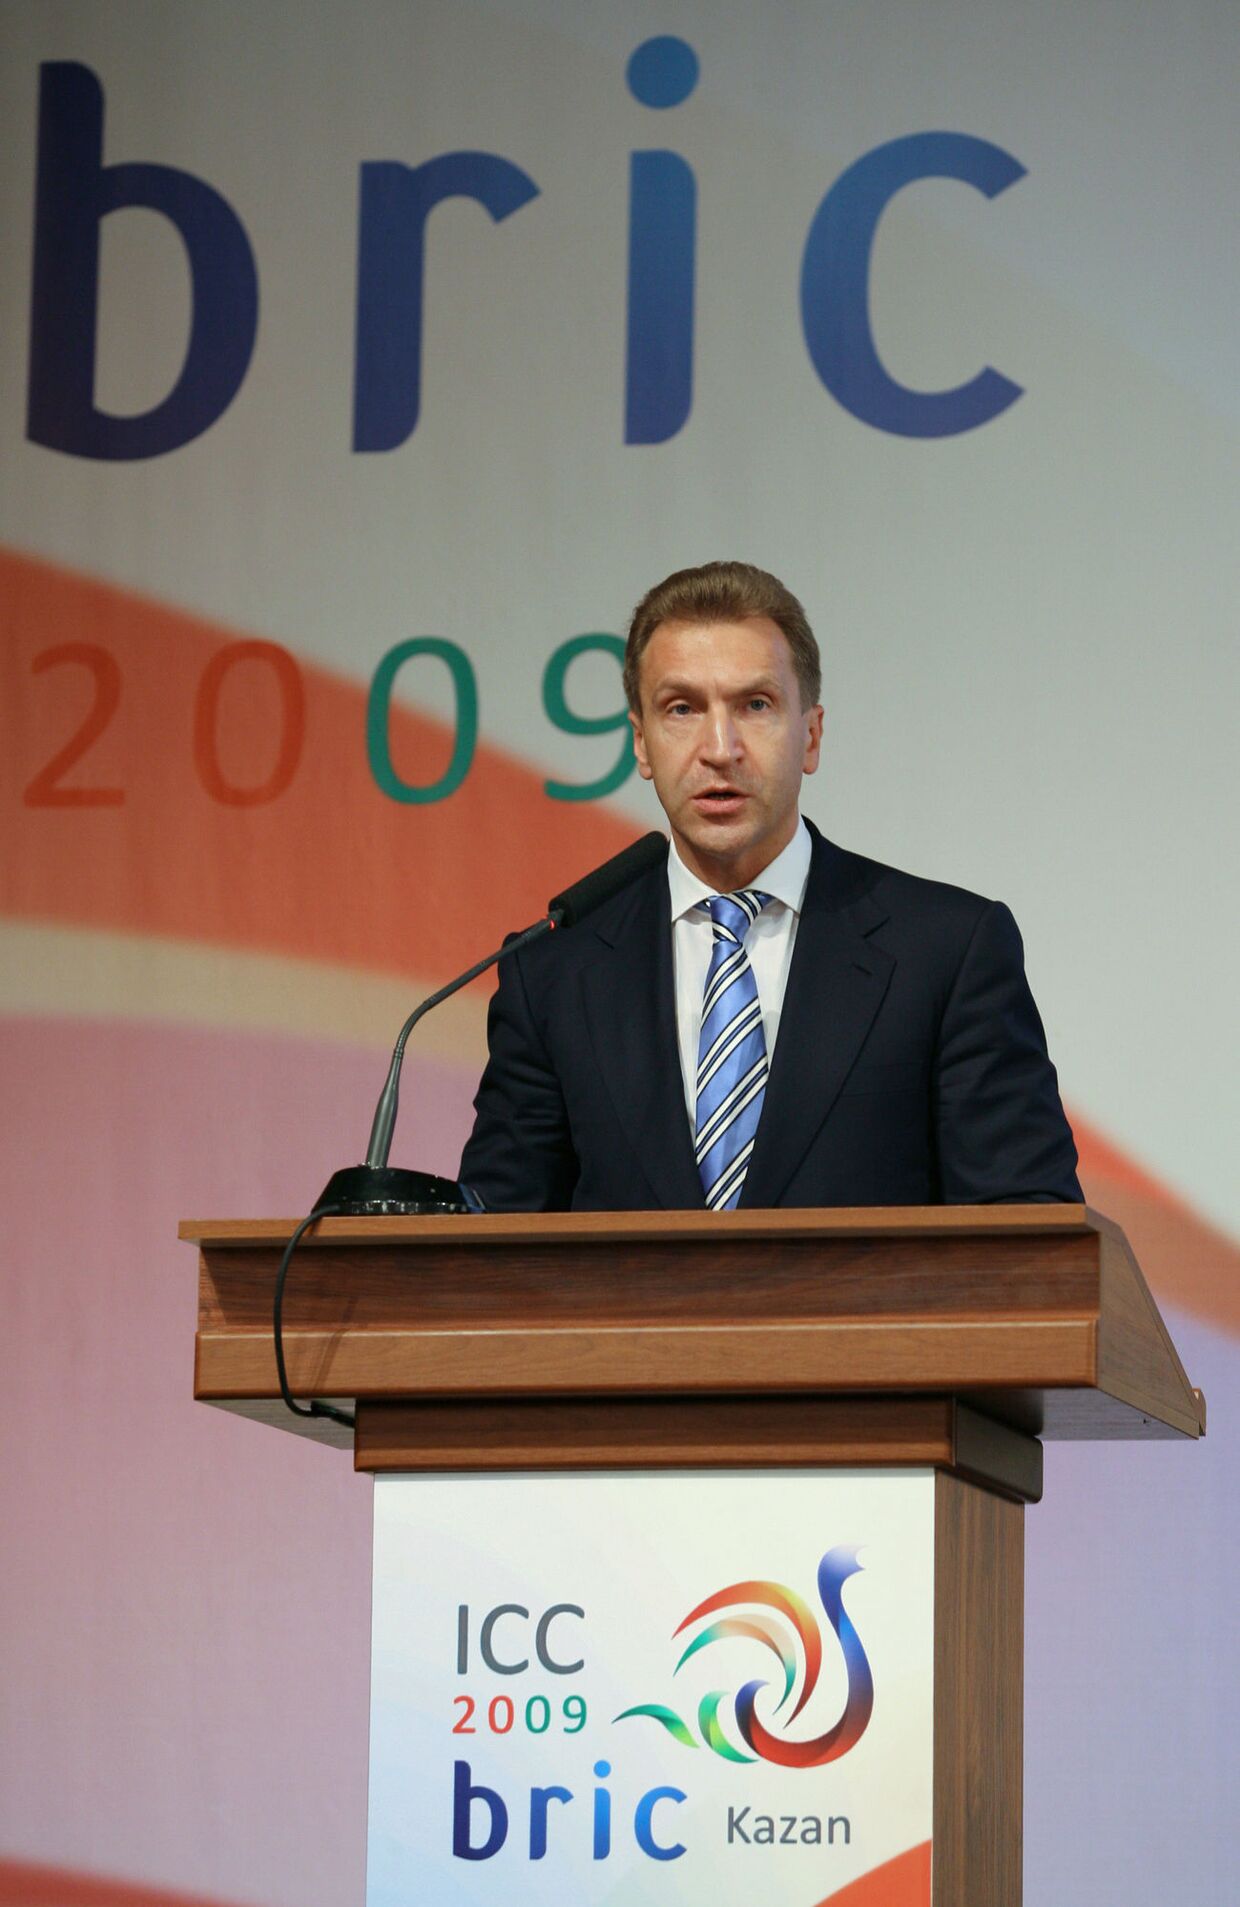 Первый заместитель председателя правительства РФ Игорь Шувалов